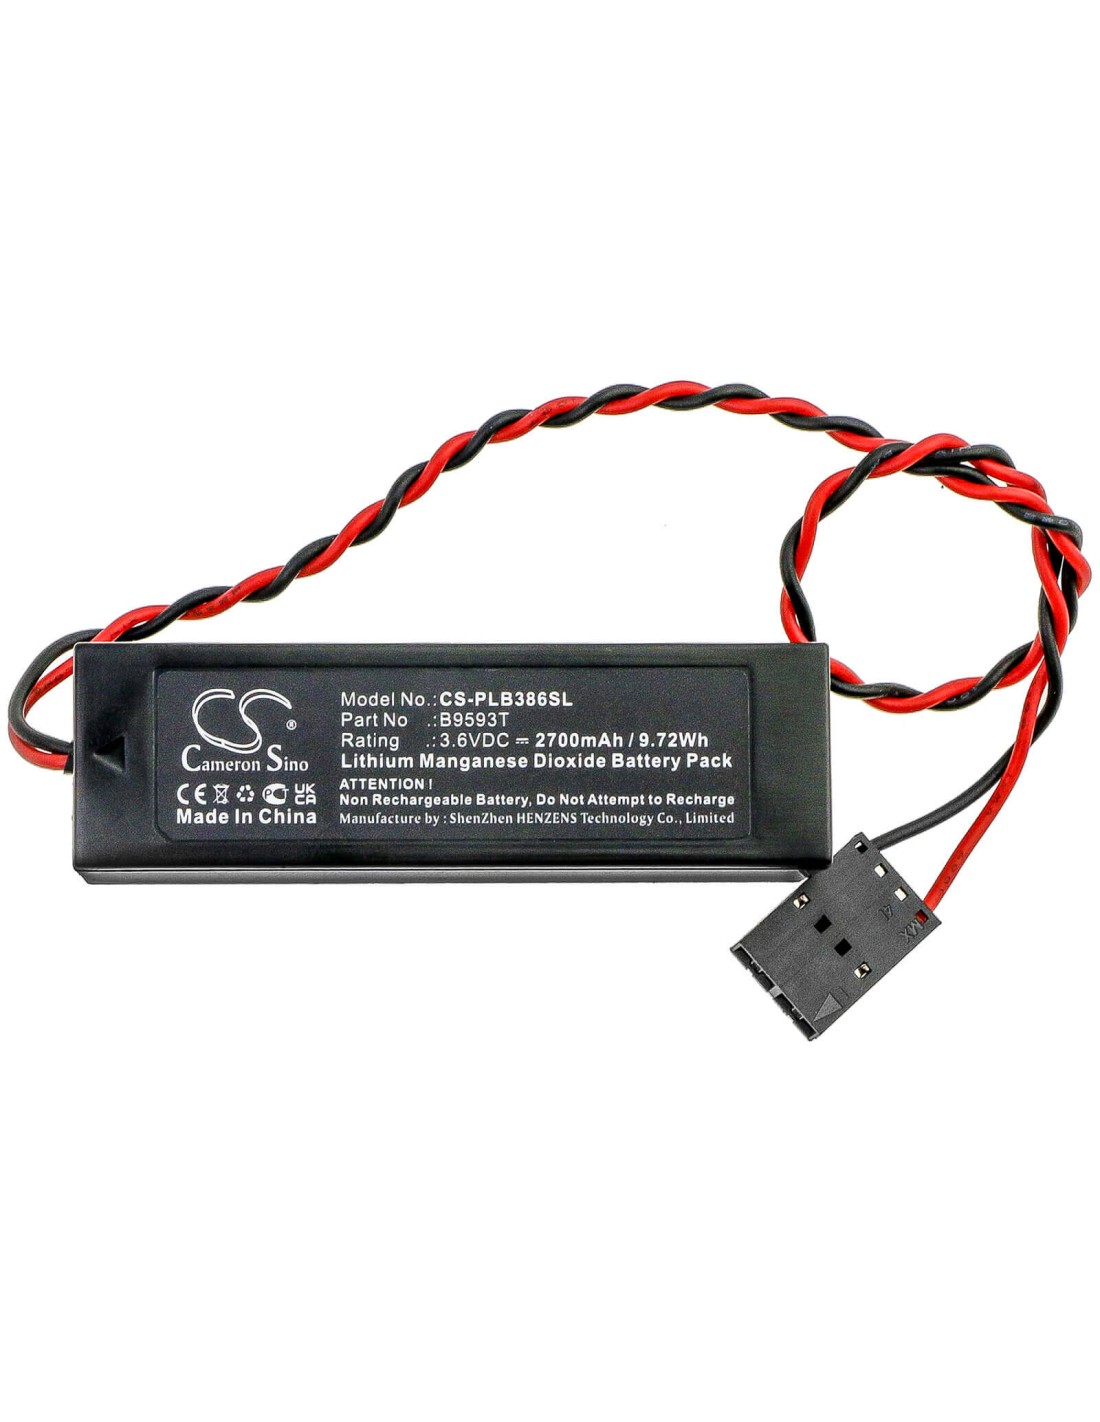 Battery for Comtrade, 486dx33 3.6V, 2700mAh - 9.72Wh